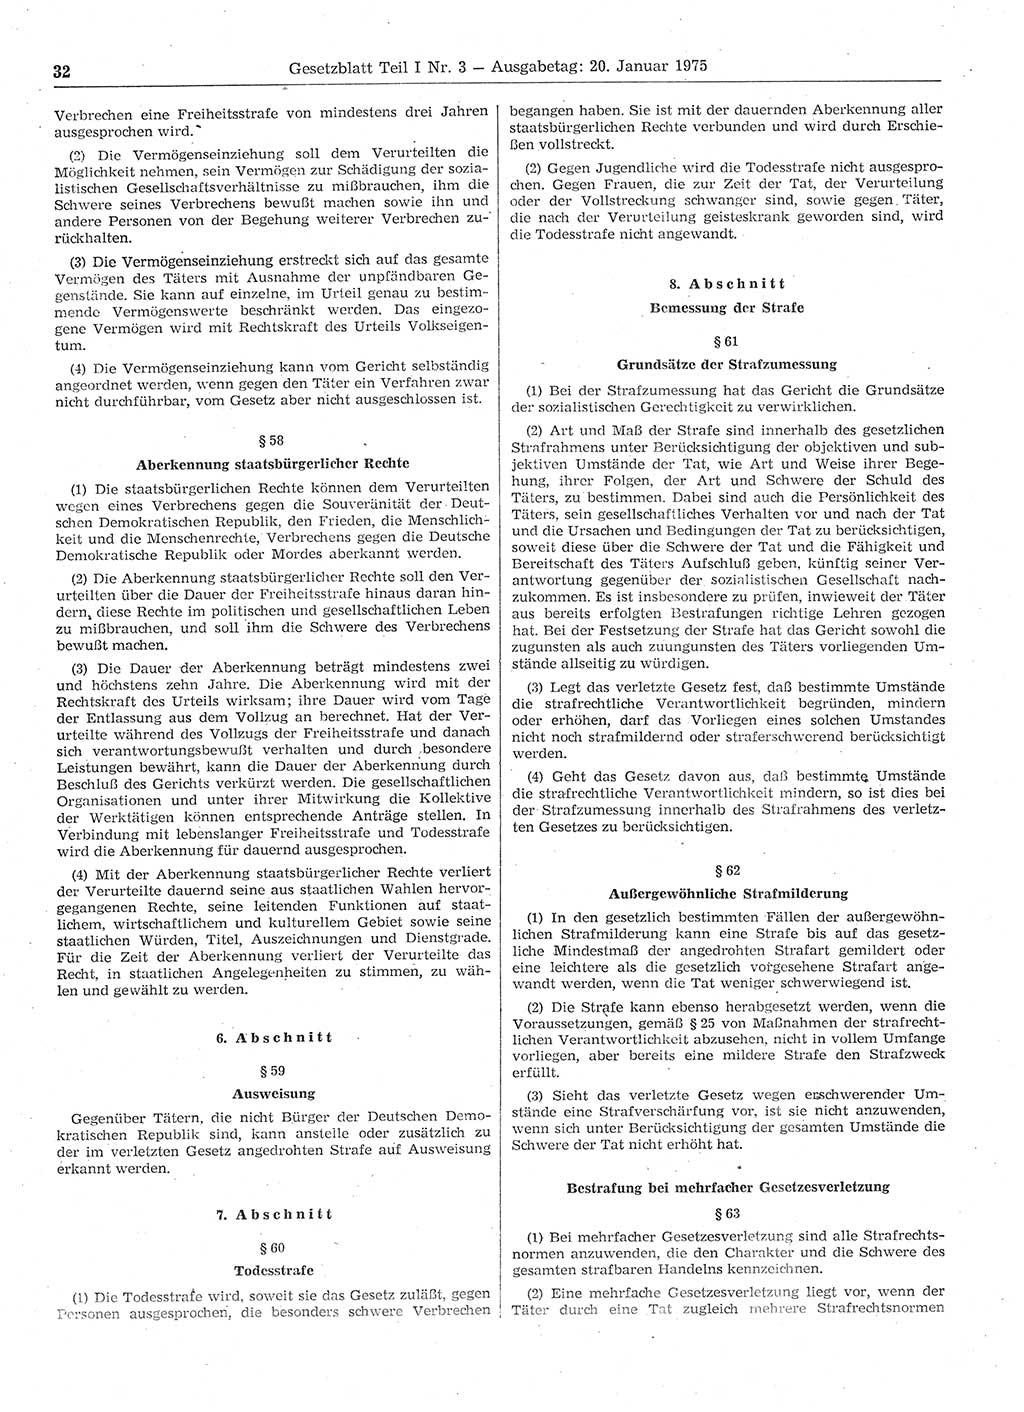 Gesetzblatt (GBl.) der Deutschen Demokratischen Republik (DDR) Teil Ⅰ 1975, Seite 32 (GBl. DDR Ⅰ 1975, S. 32)